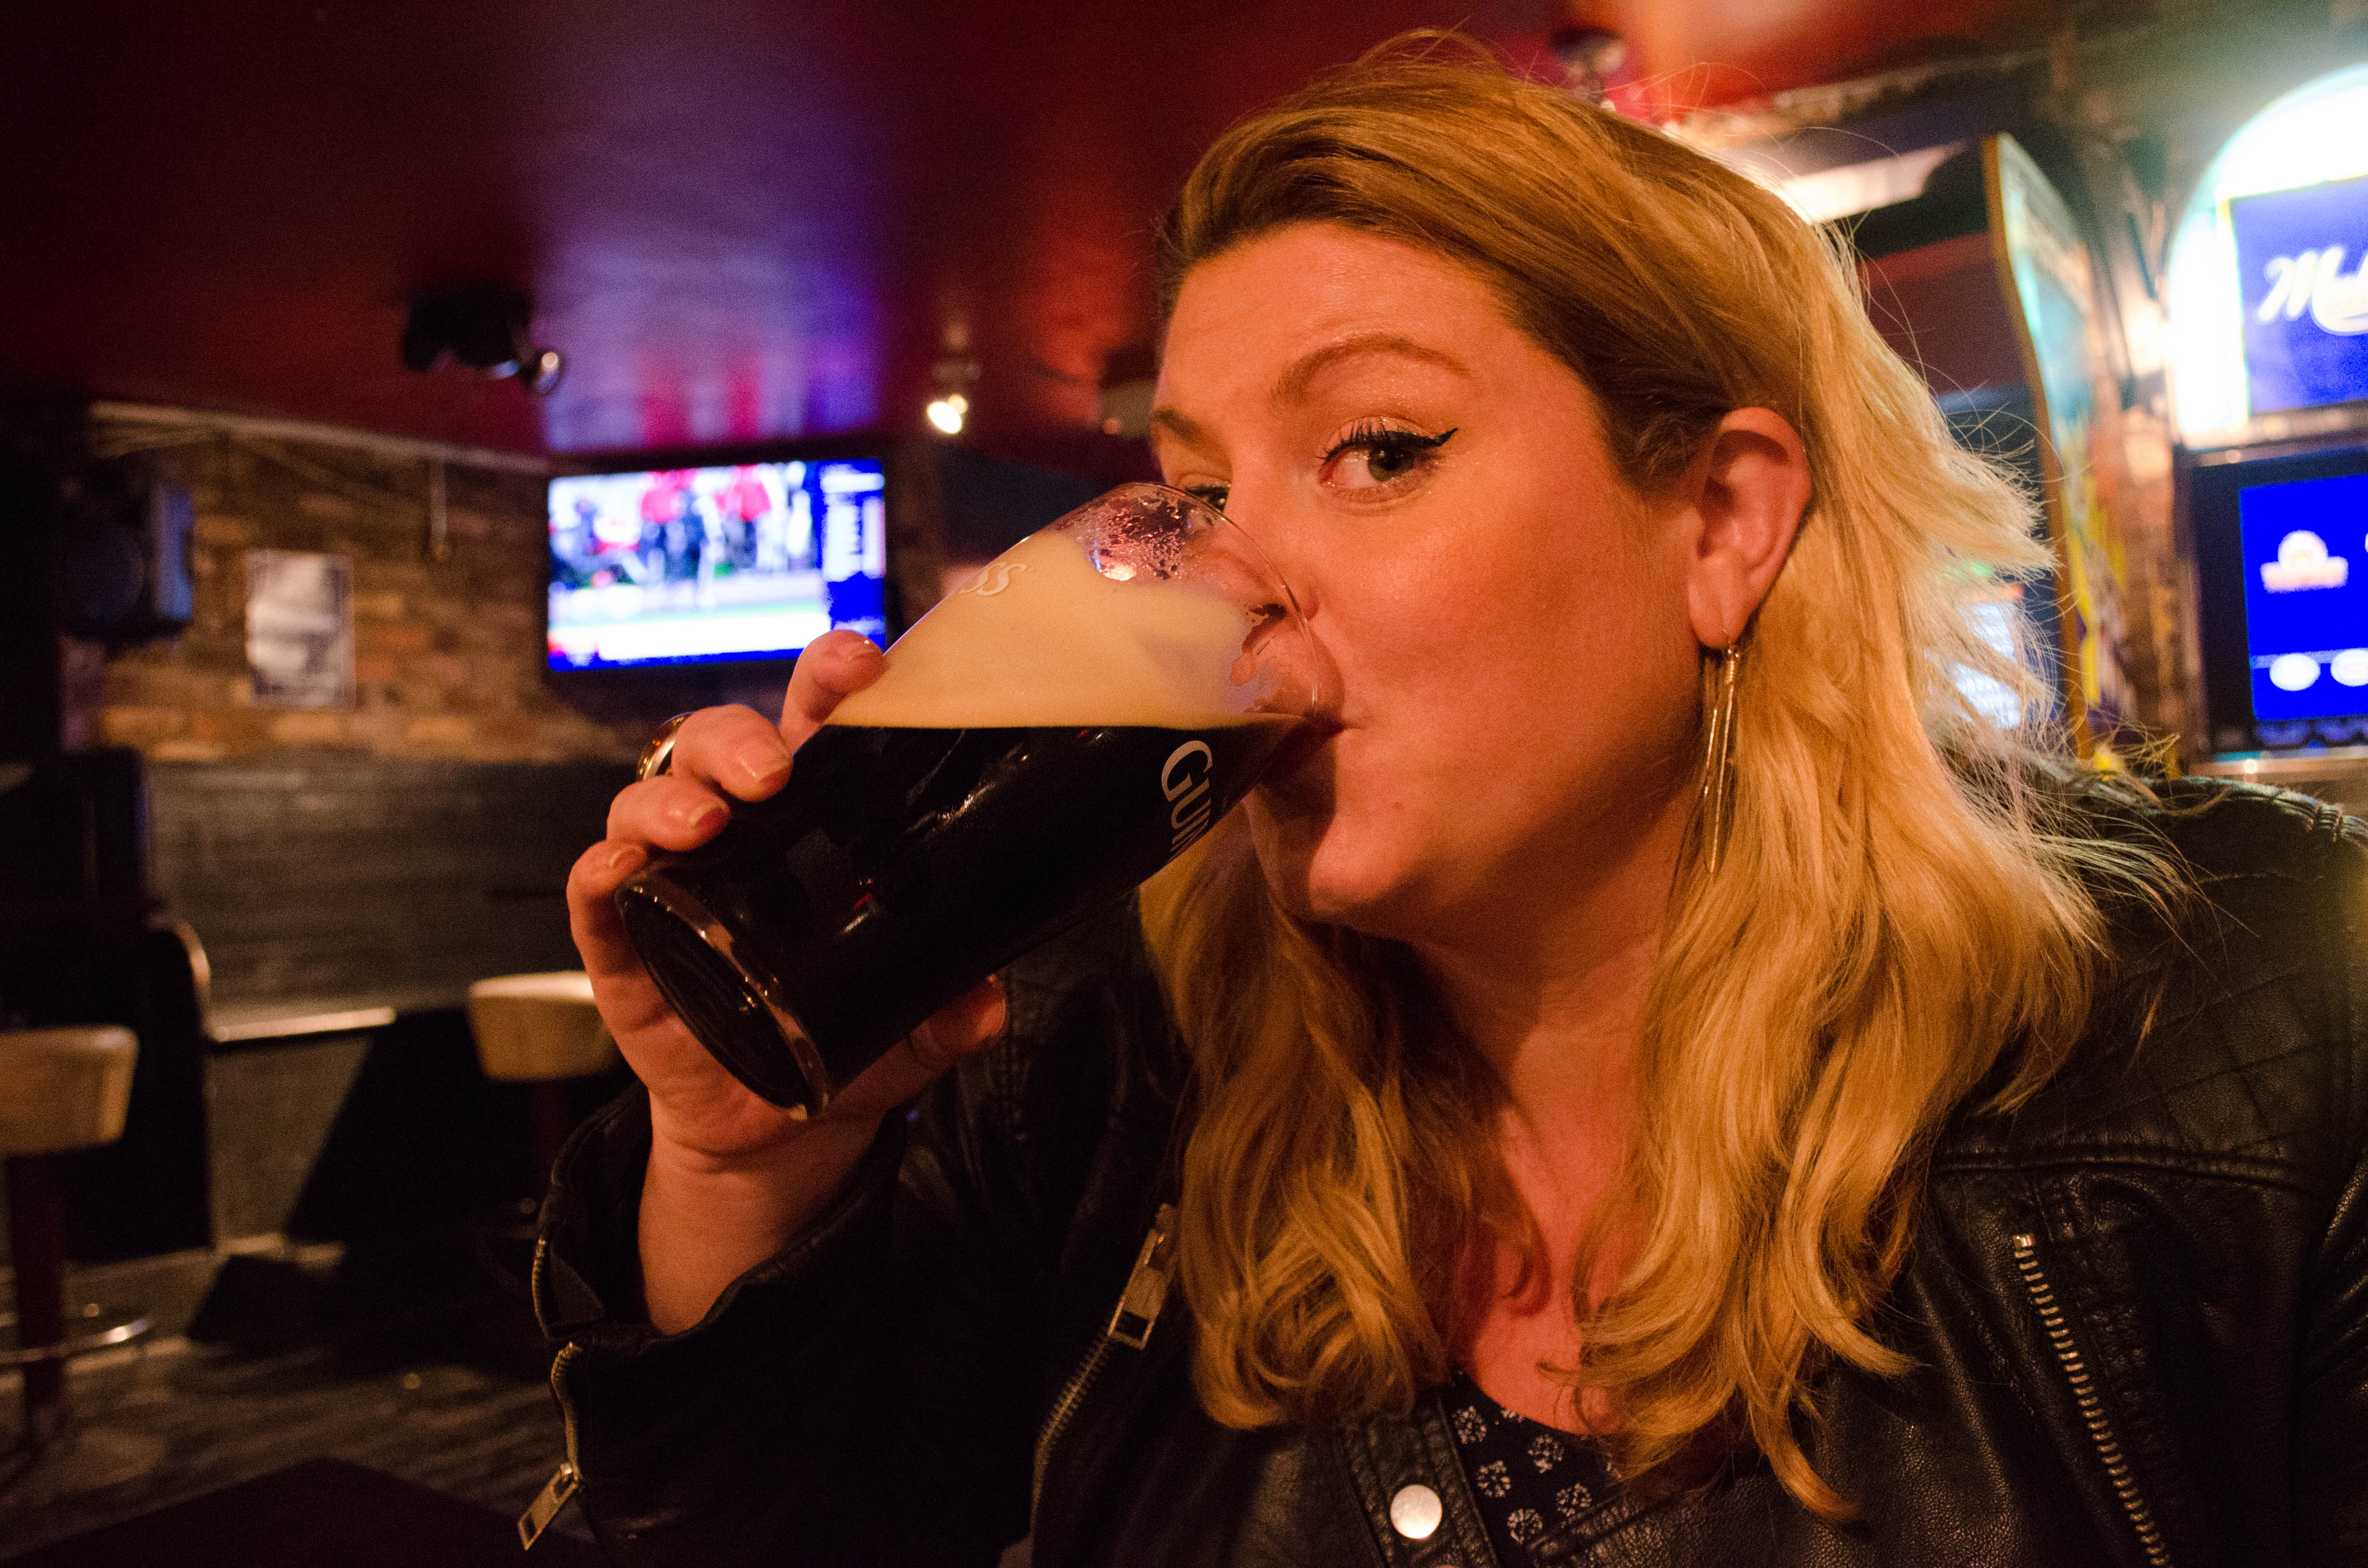 Drinking Guinness in Dublin